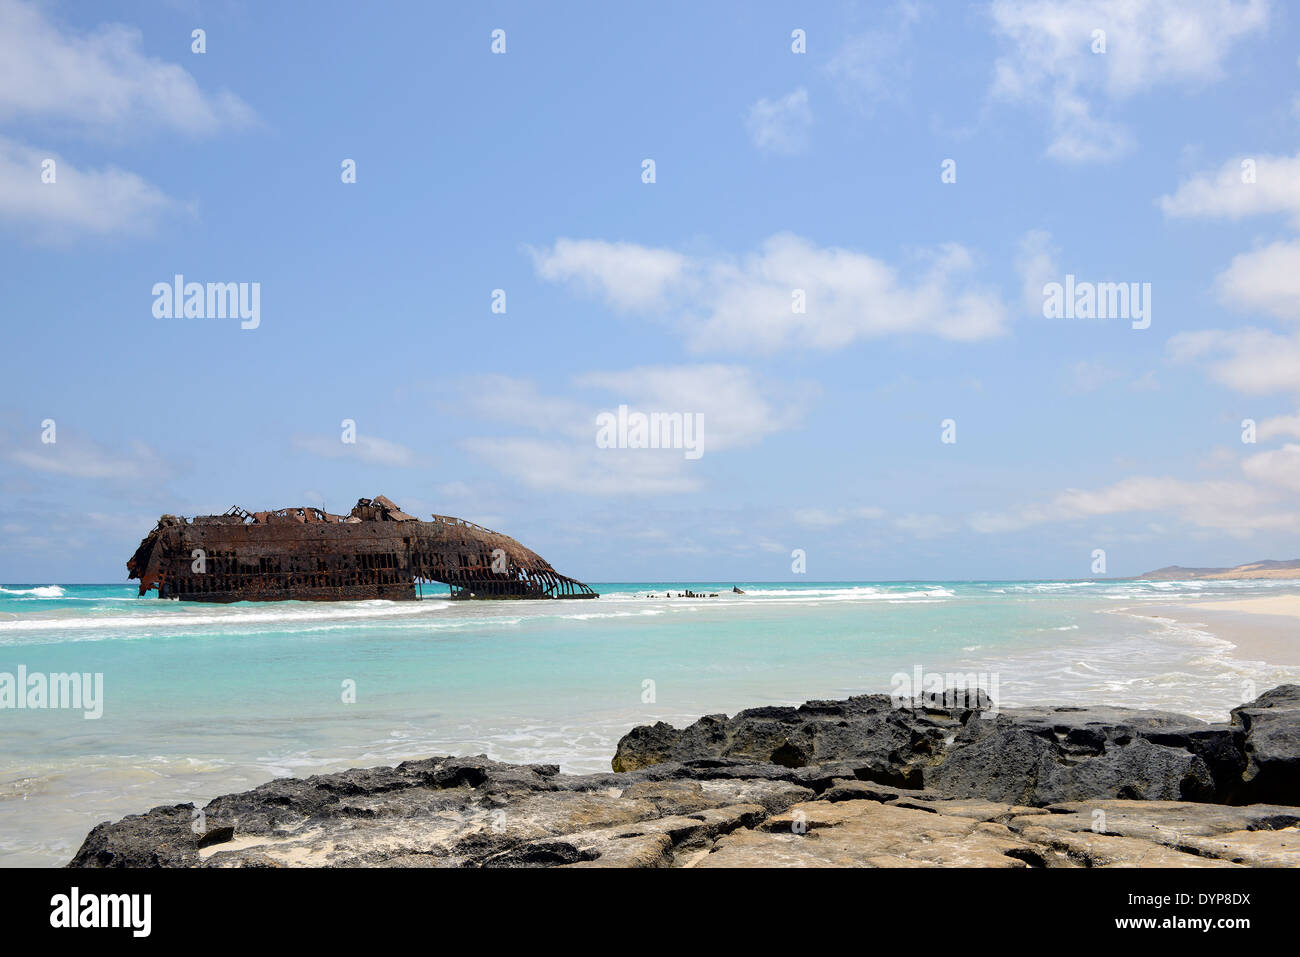 Beach with a ship Wreck in Cabo de Santa Maria, Boa Vista Island in Cape Verde Stock Photo